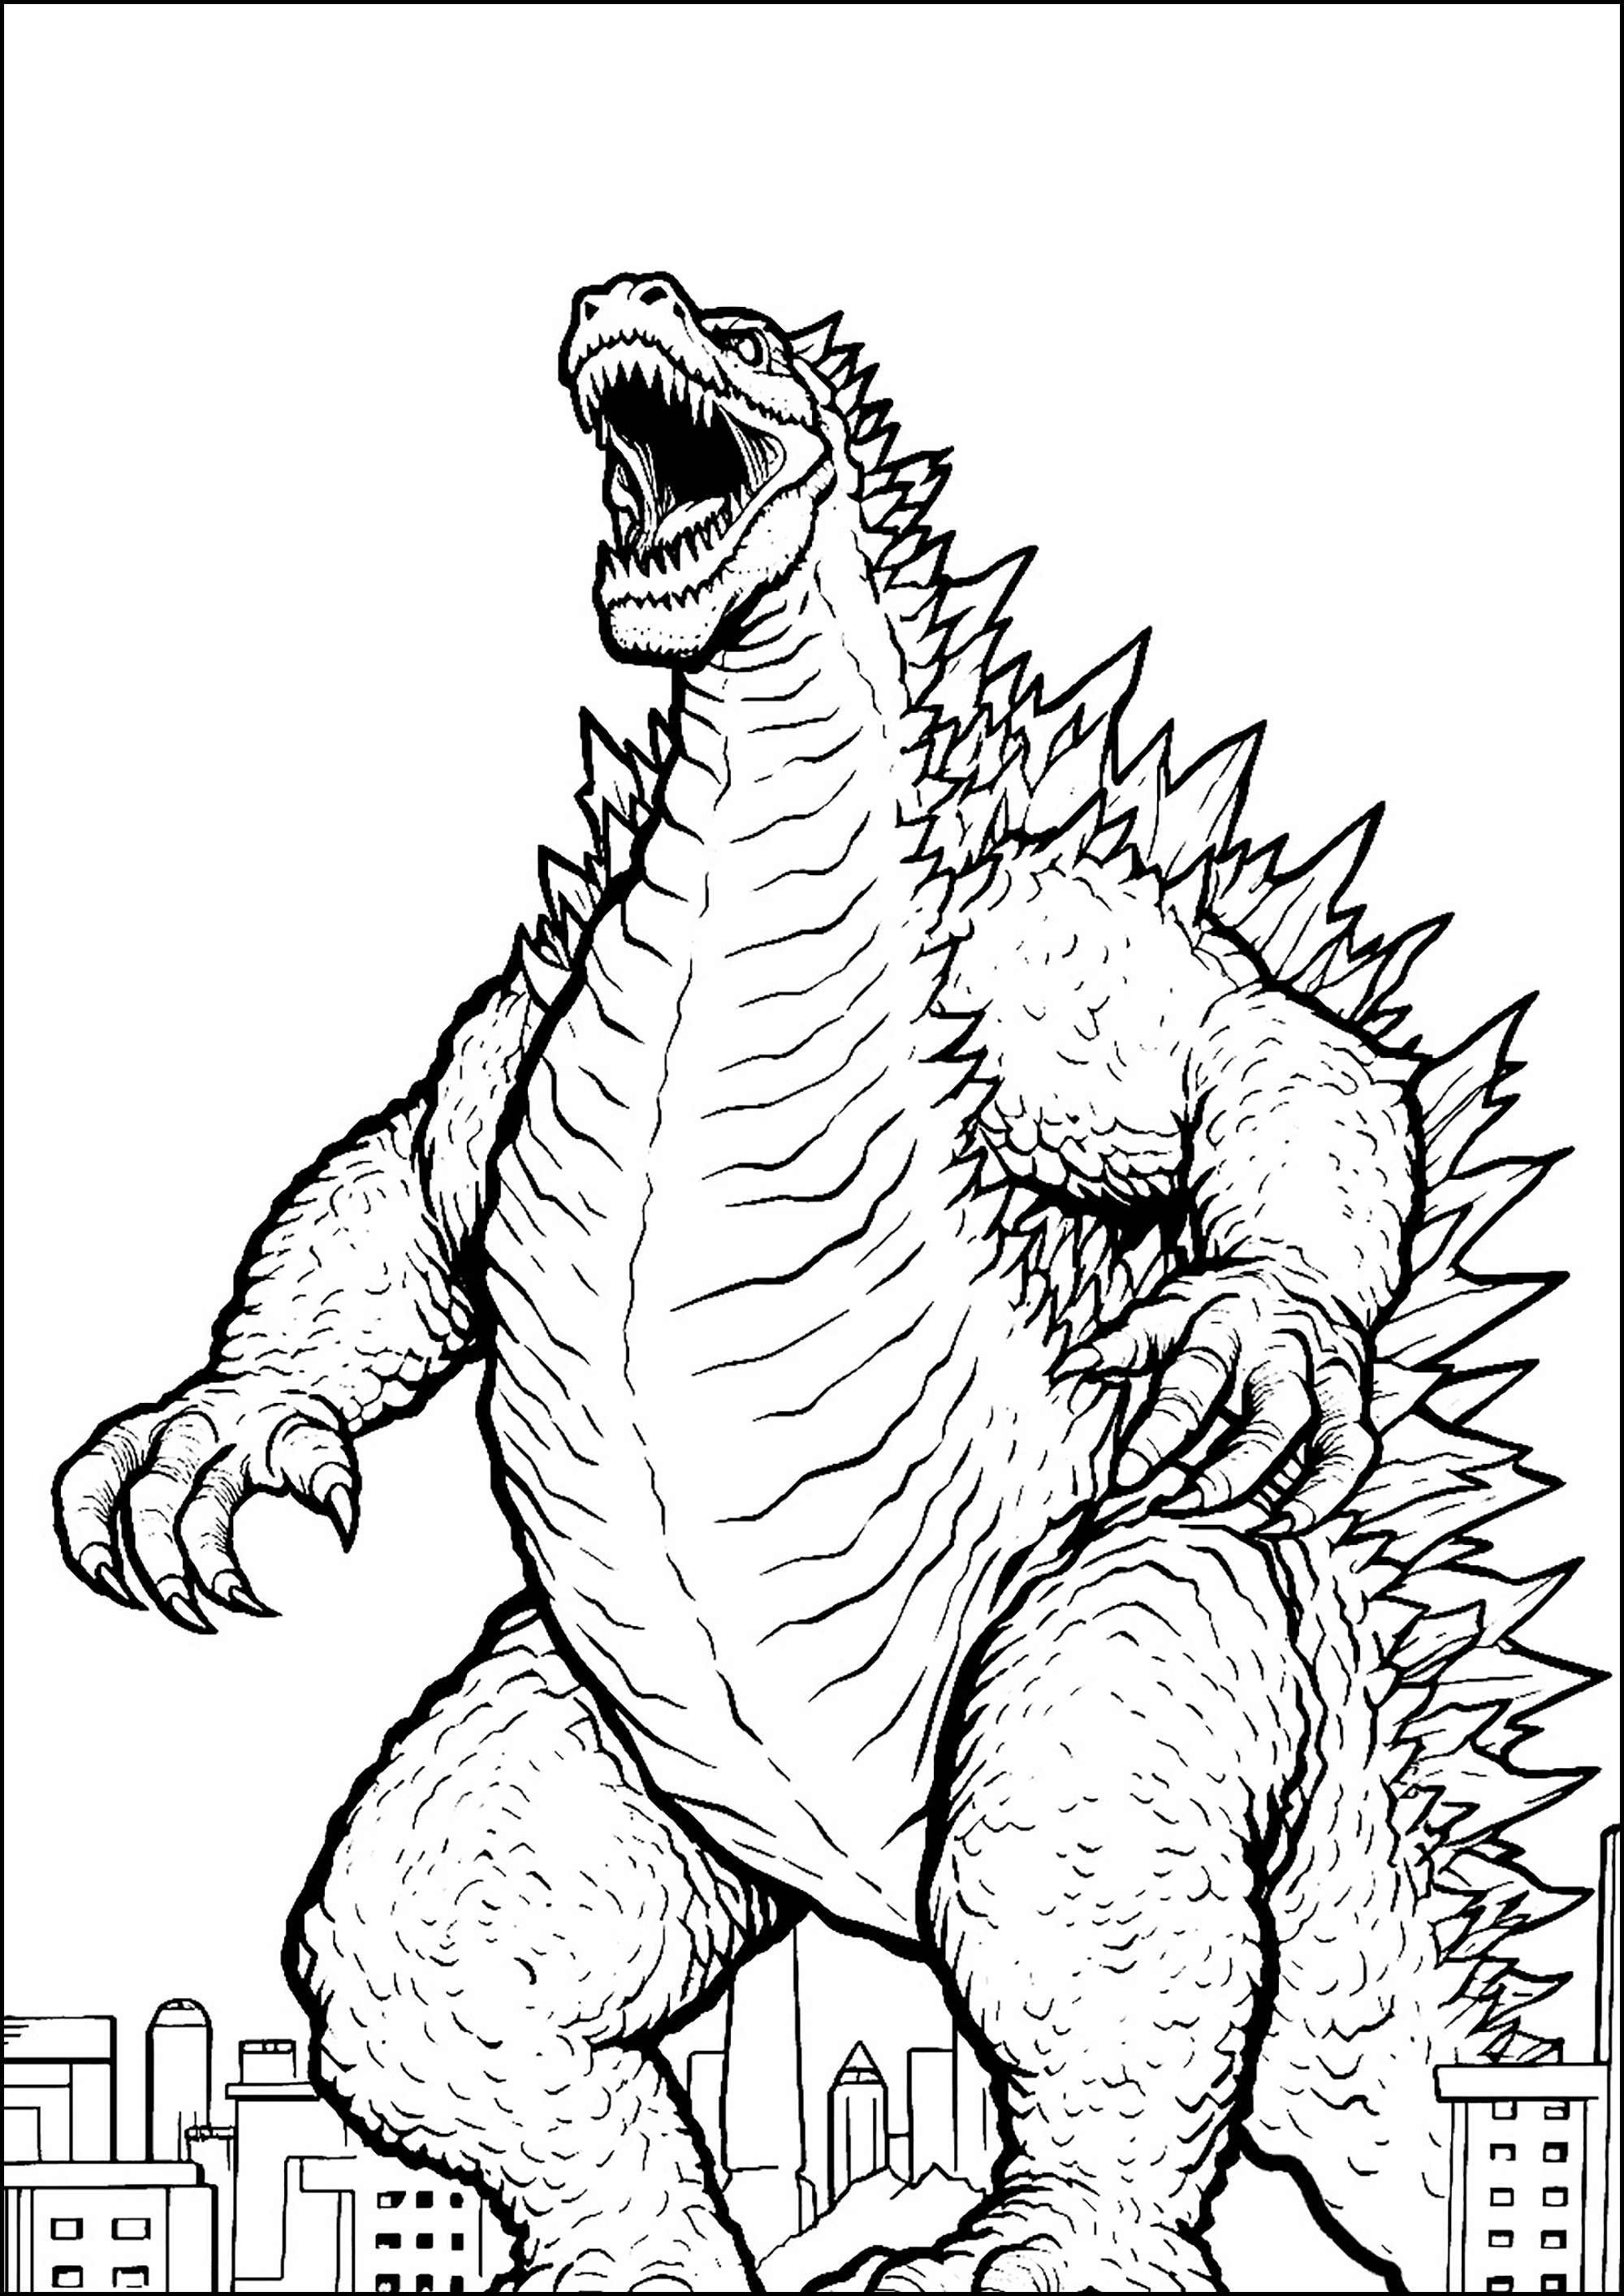 El enorme Godzilla, muy enfadado. Godzilla es 'un cruce entre un gorila y una ballena' en referencia a su tamaño, fuerza y orígenes acuáticos.